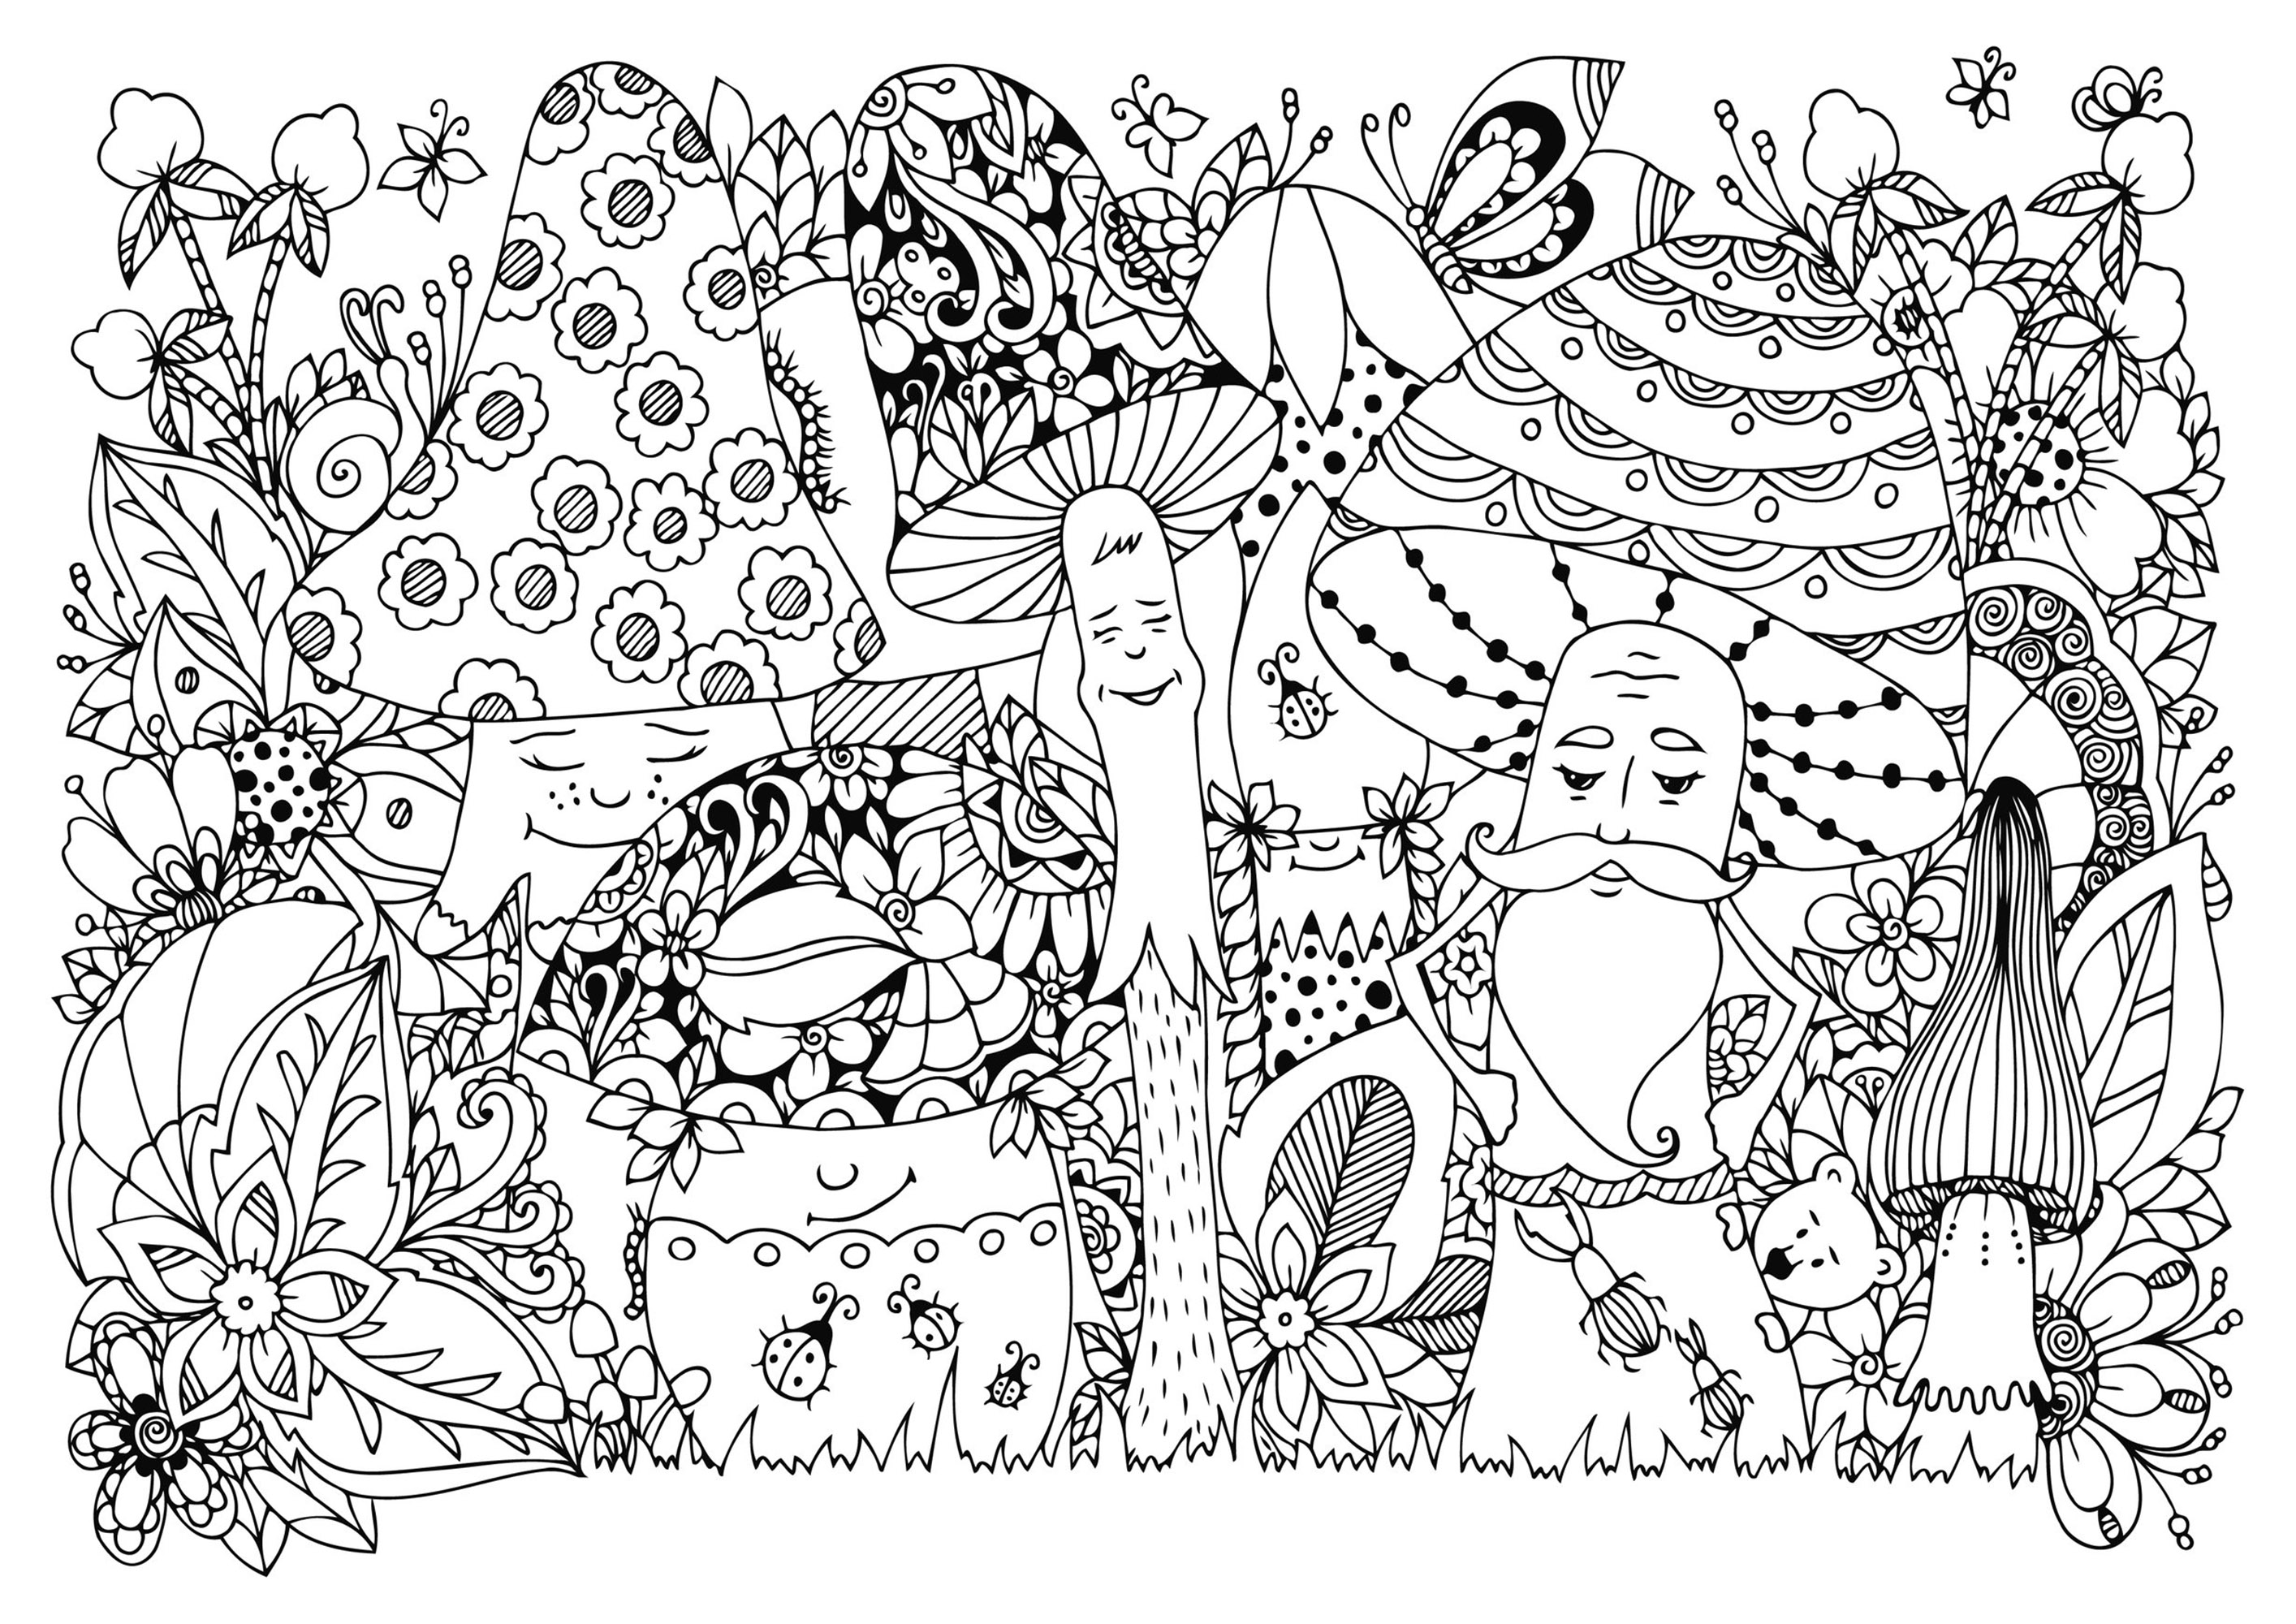 Champignons joyeux dans la forêt, avec nombreux insectes et fleurs. Nombreux détails cachés à découvrir et à colorier, Source : 123rf   Artiste : Tanvetka